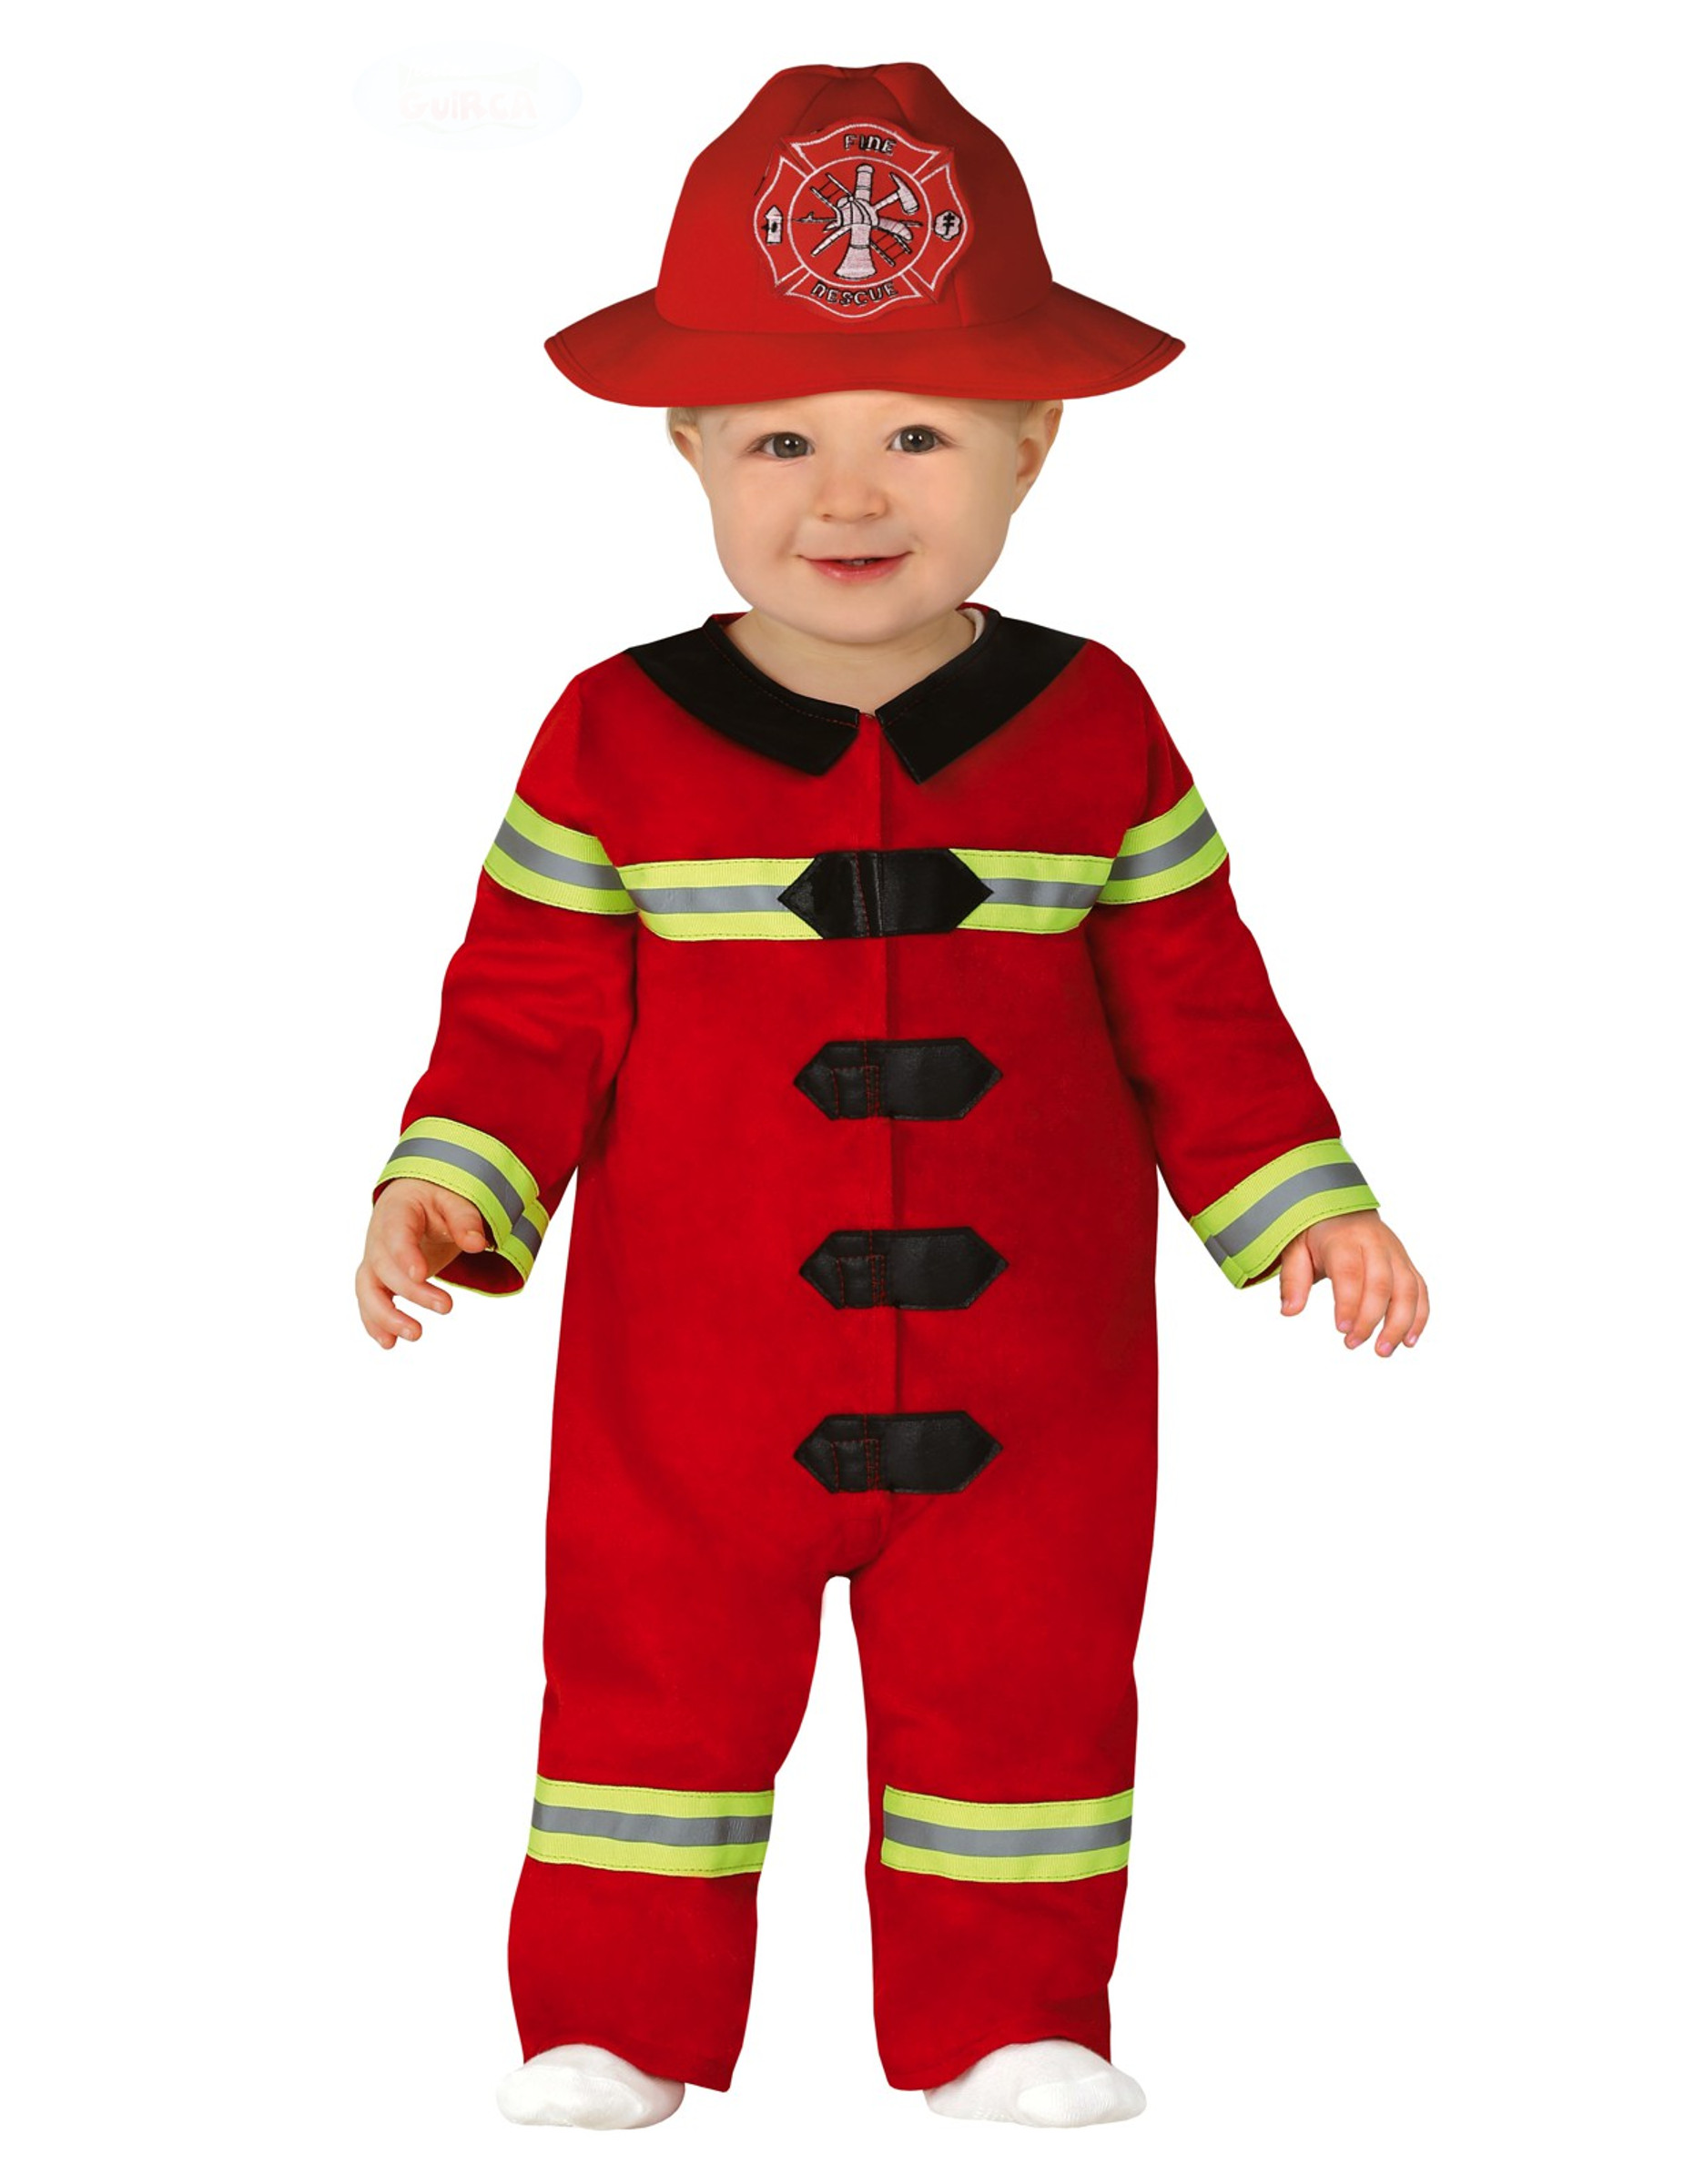 Feuerwehrmann-Kostüm für Babys und Kleinkinder Baby-Kostüm für Karneval rot-schwarz-gelb von FIESTAS GUIRCA, S.L.